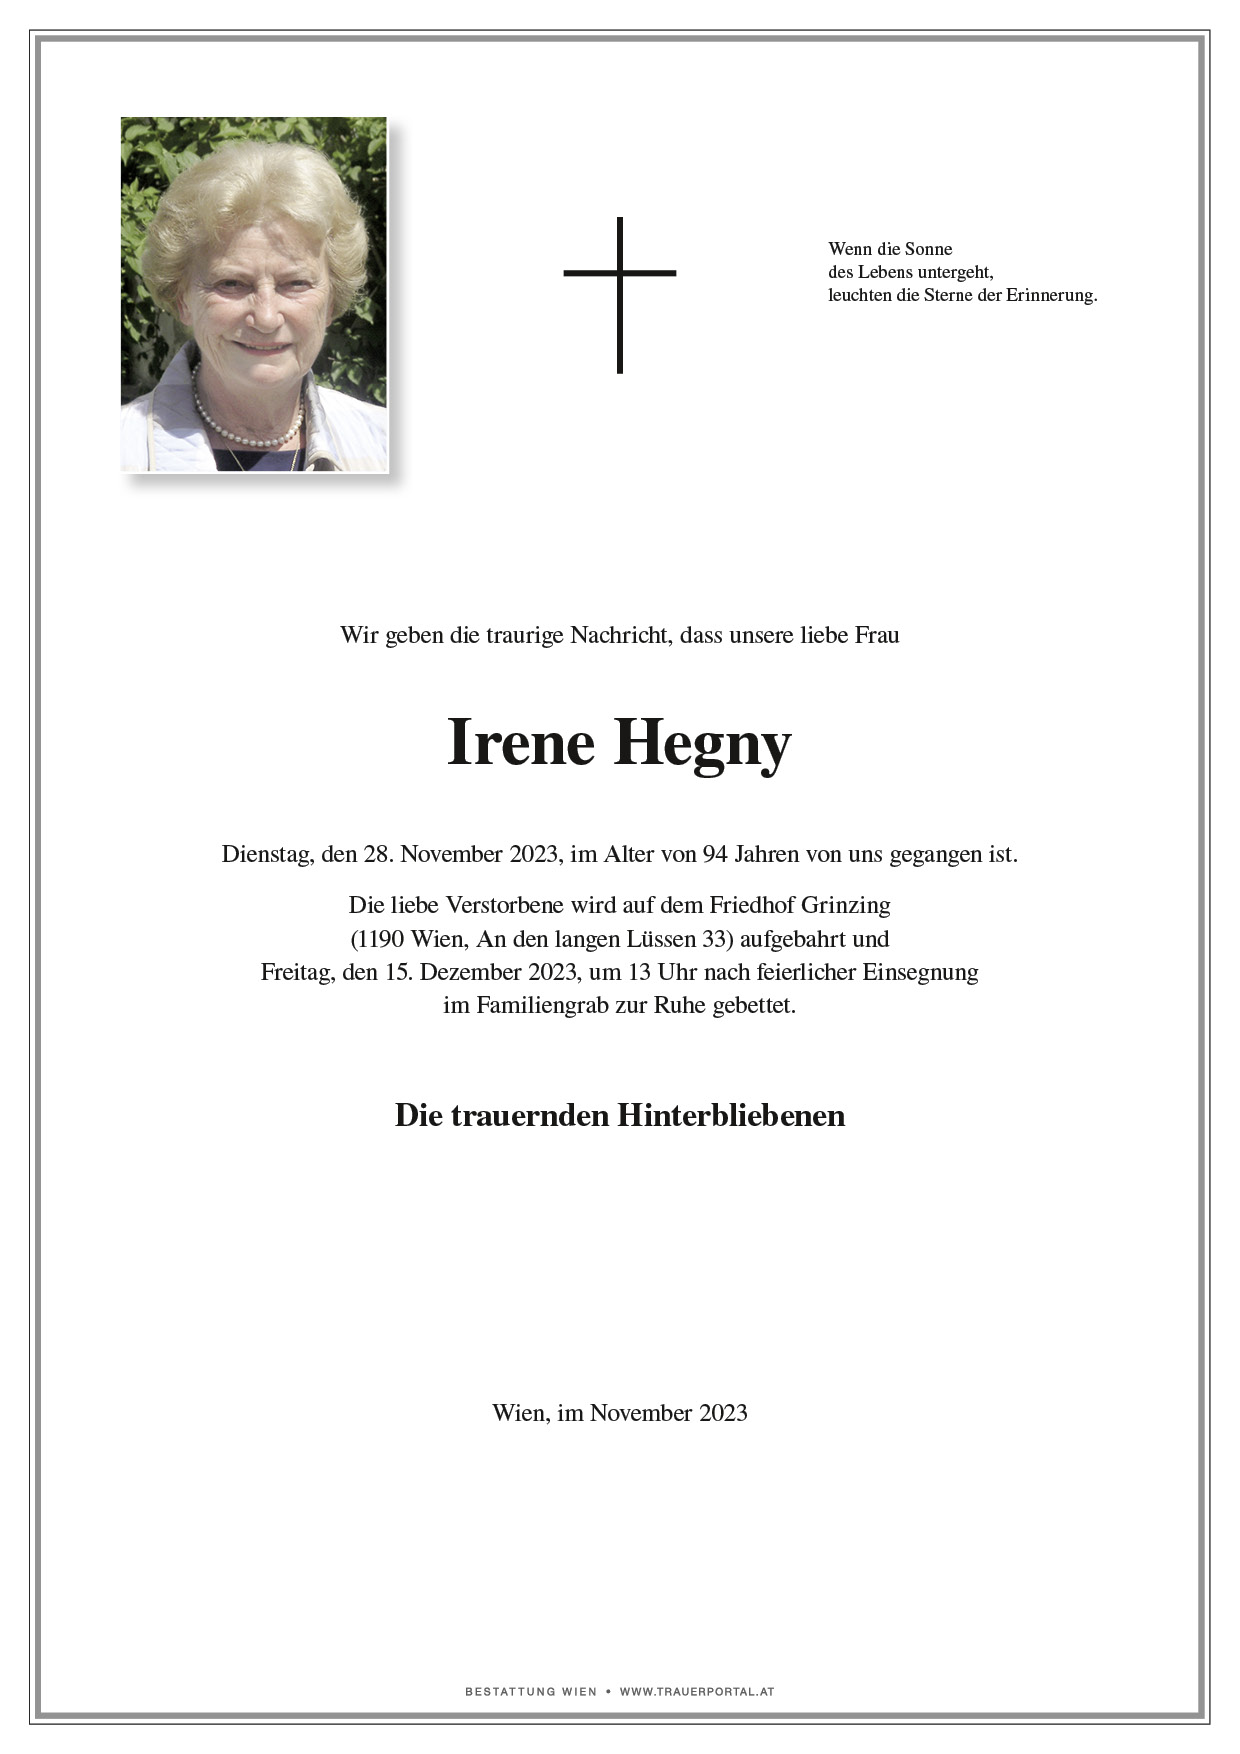 Irene Hegny